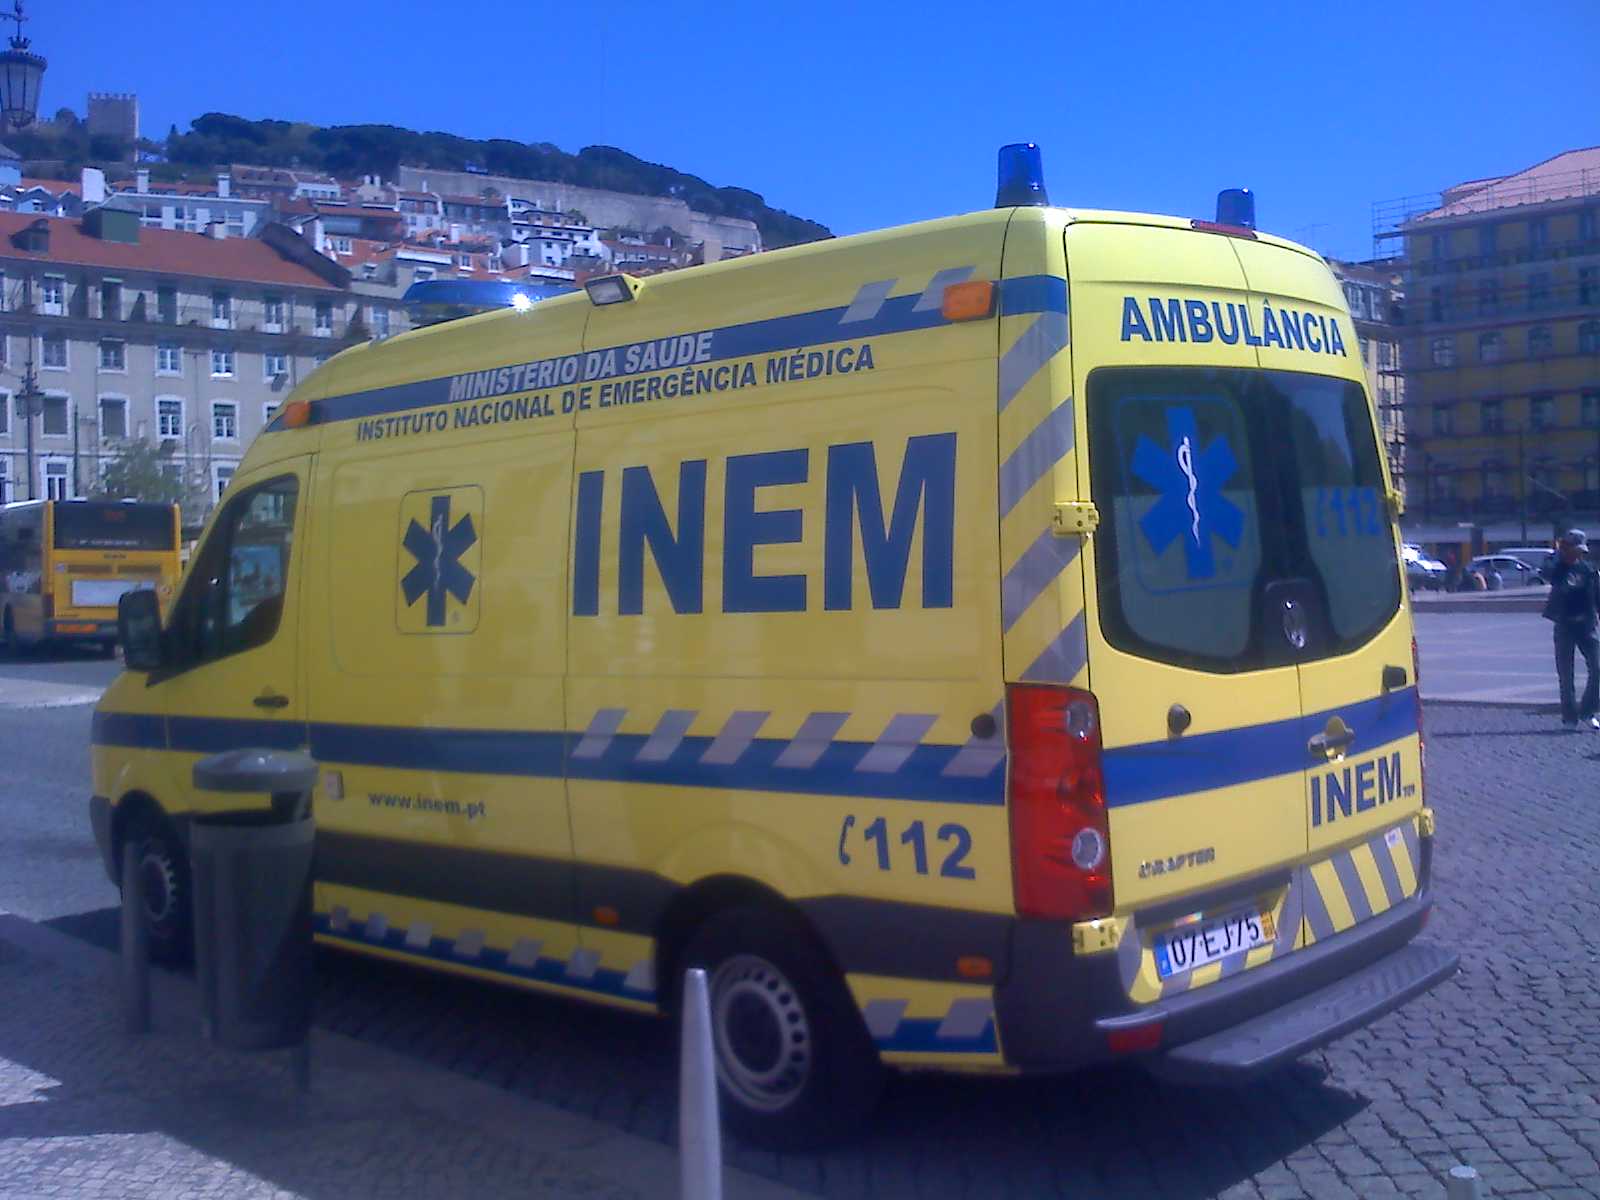 [ambulancia_inem.jpg]